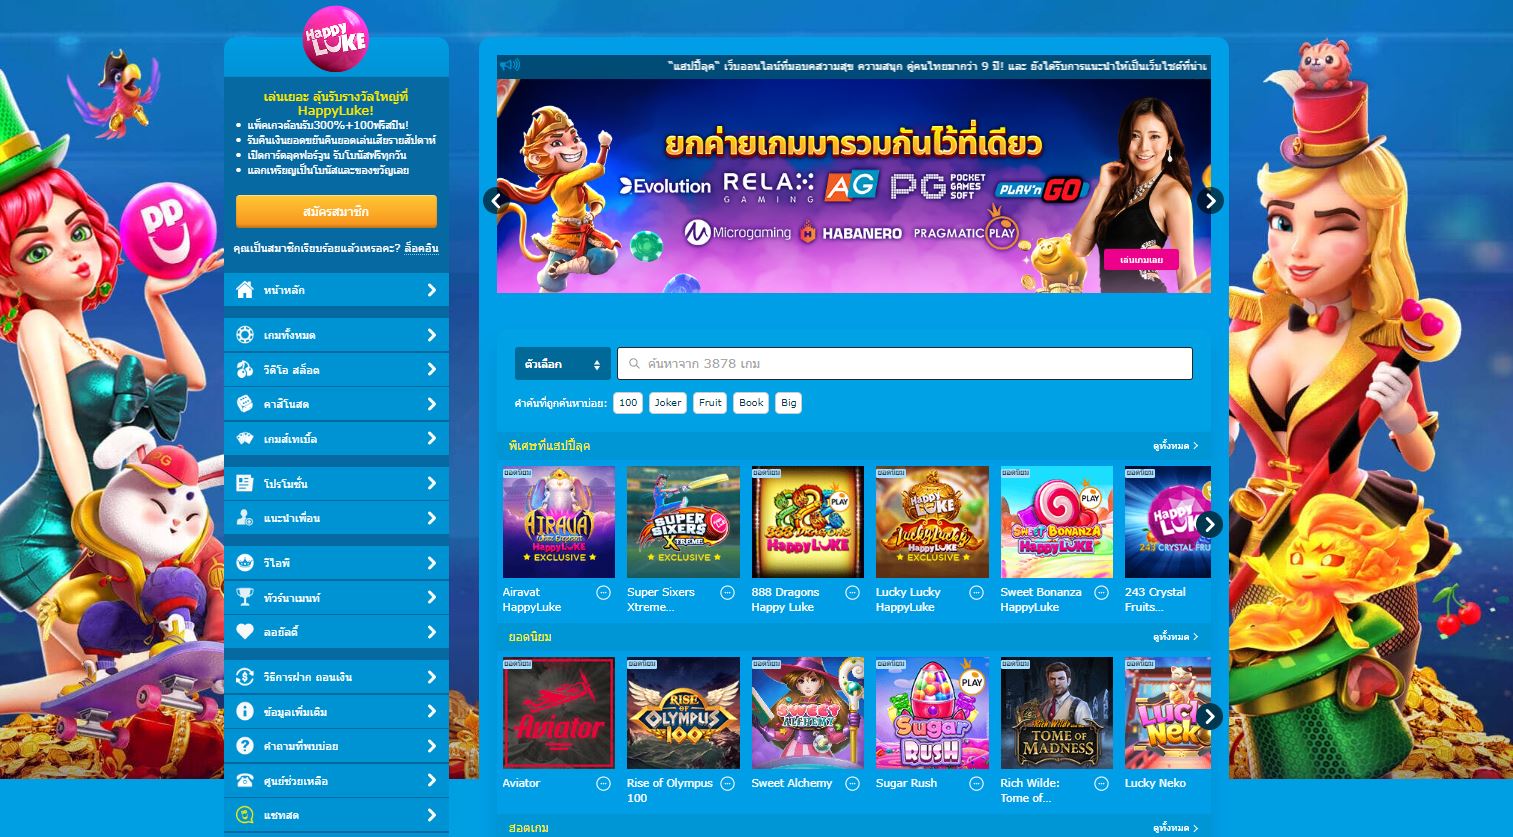 10 เหตุผลที่น่าตื่นเต้นในการเข้าร่วมและเล่น Happyluke Casino ในประเทศไทย!